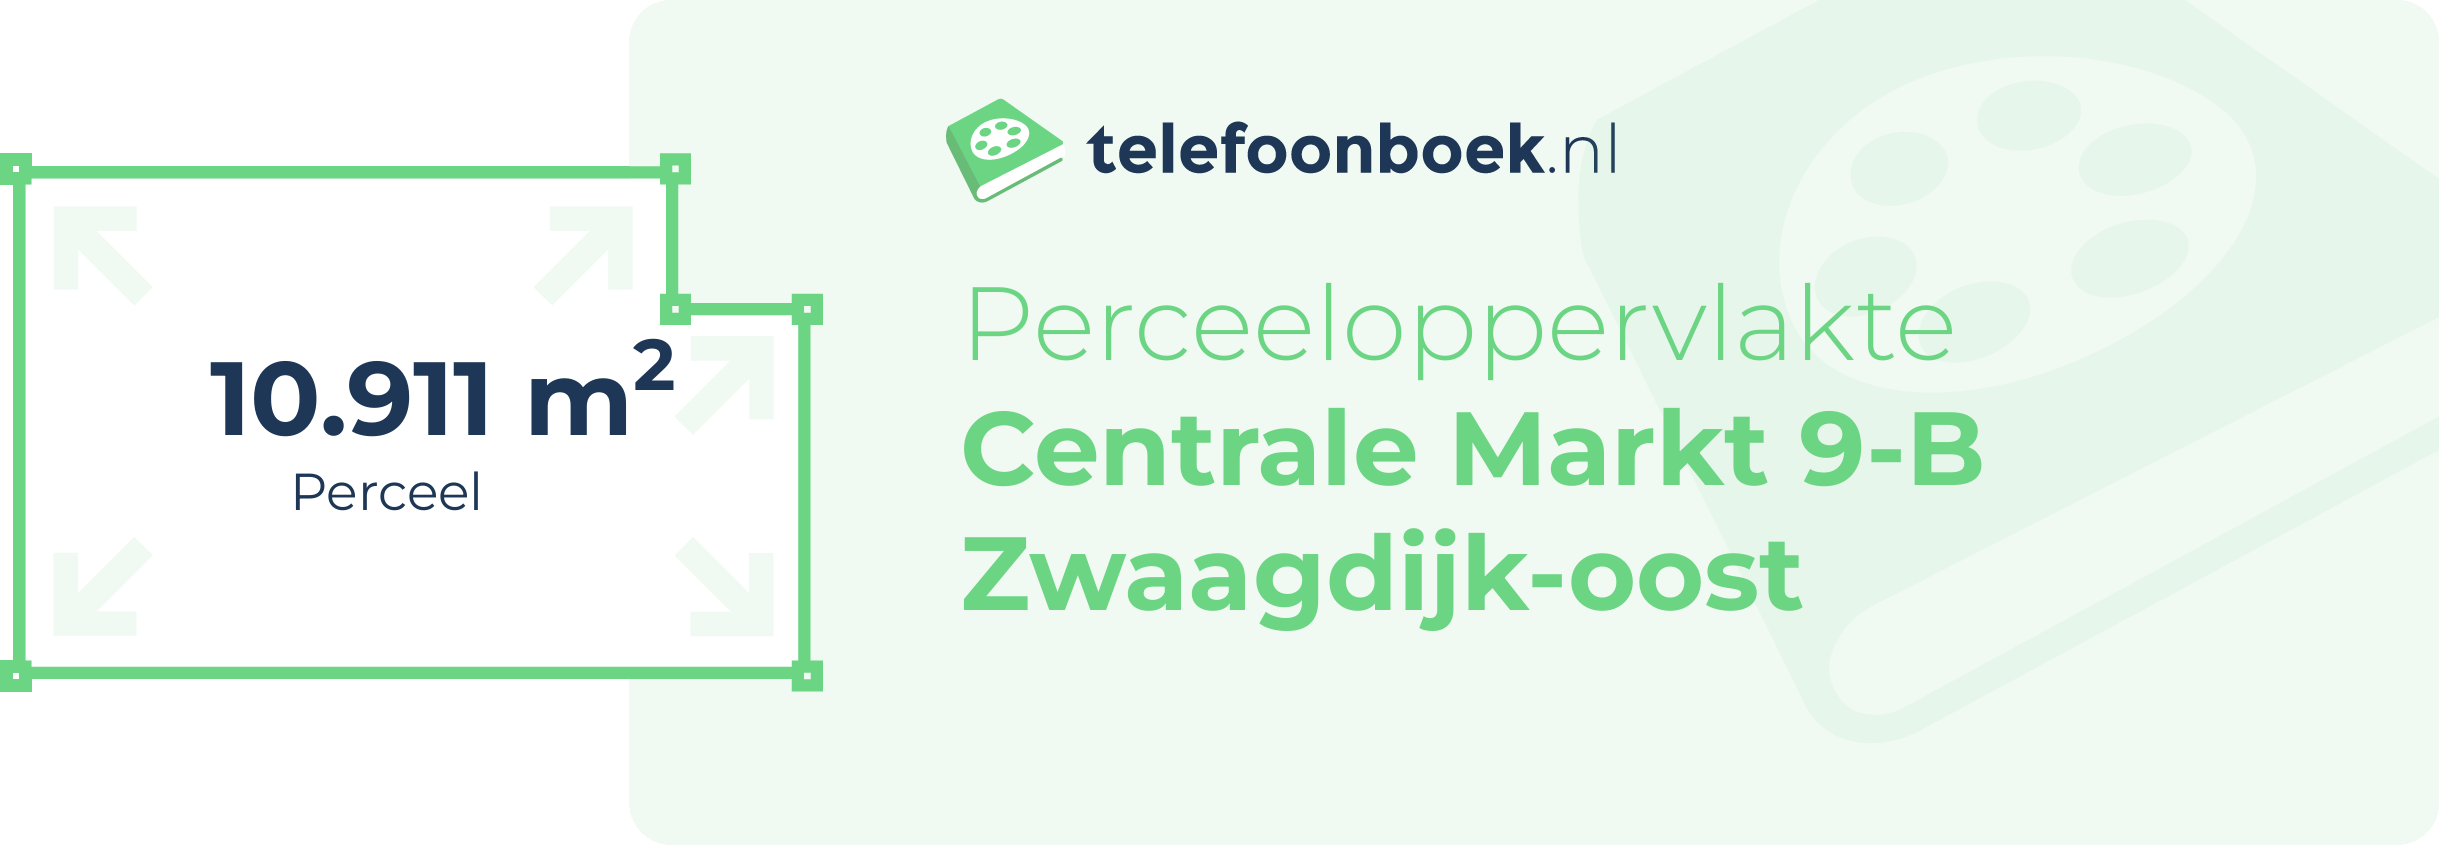 Perceeloppervlakte Centrale Markt 9-B Zwaagdijk-Oost